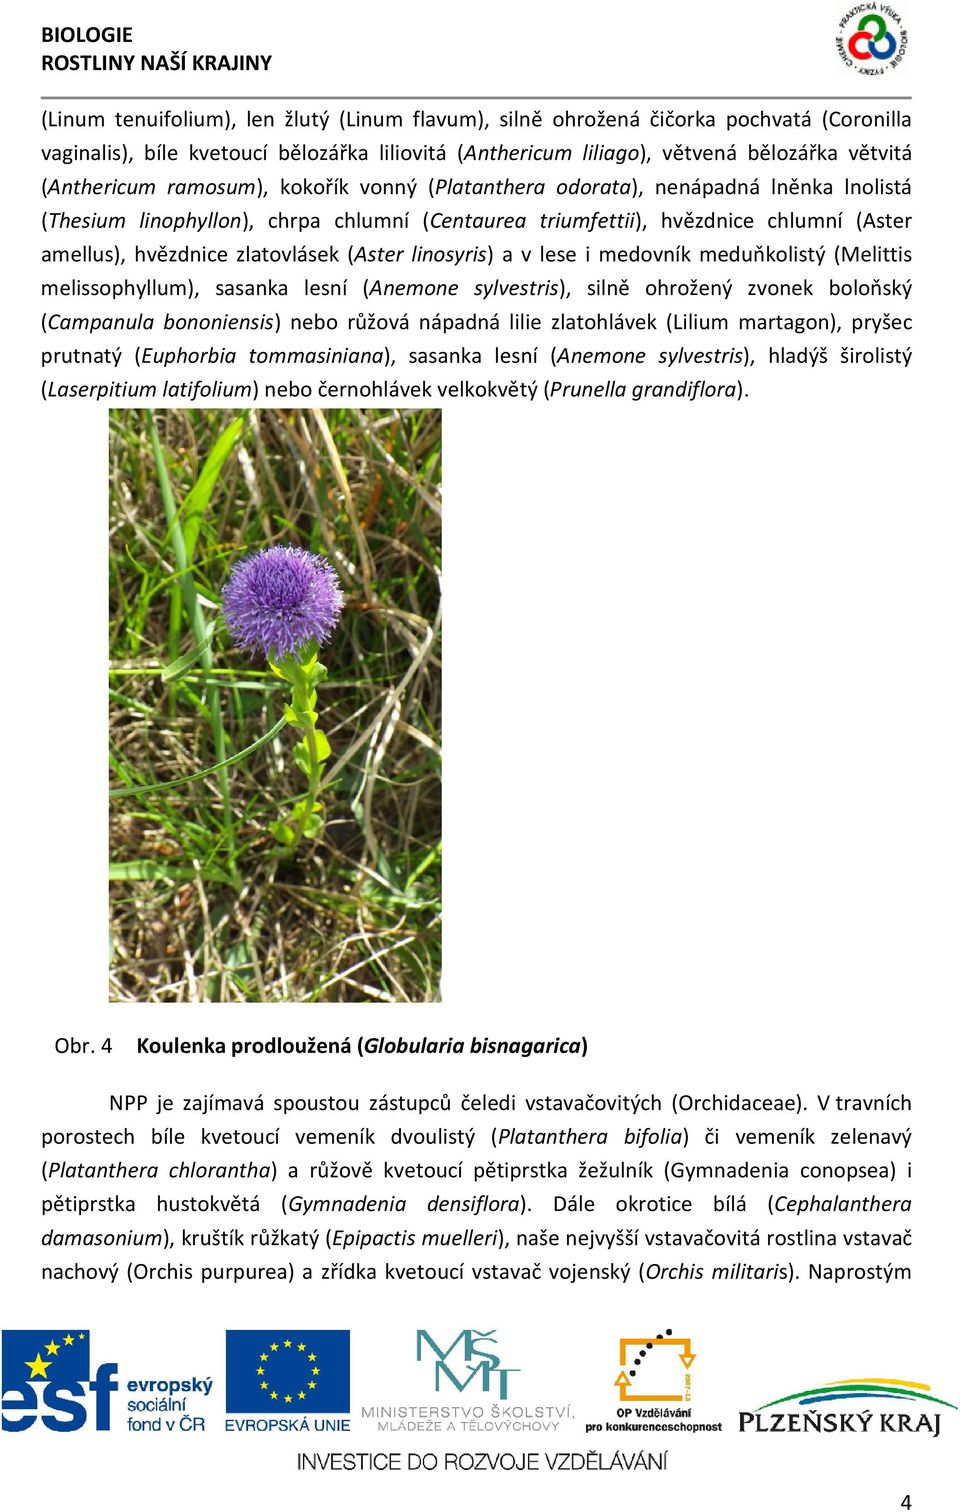 hvězdnice zlatovlásek (Aster linosyris) a v lese i medovník meduňkolistý (Melittis melissophyllum), sasanka lesní (Anemone sylvestris), silně ohrožený zvonek boloňský (Campanula bononiensis) nebo